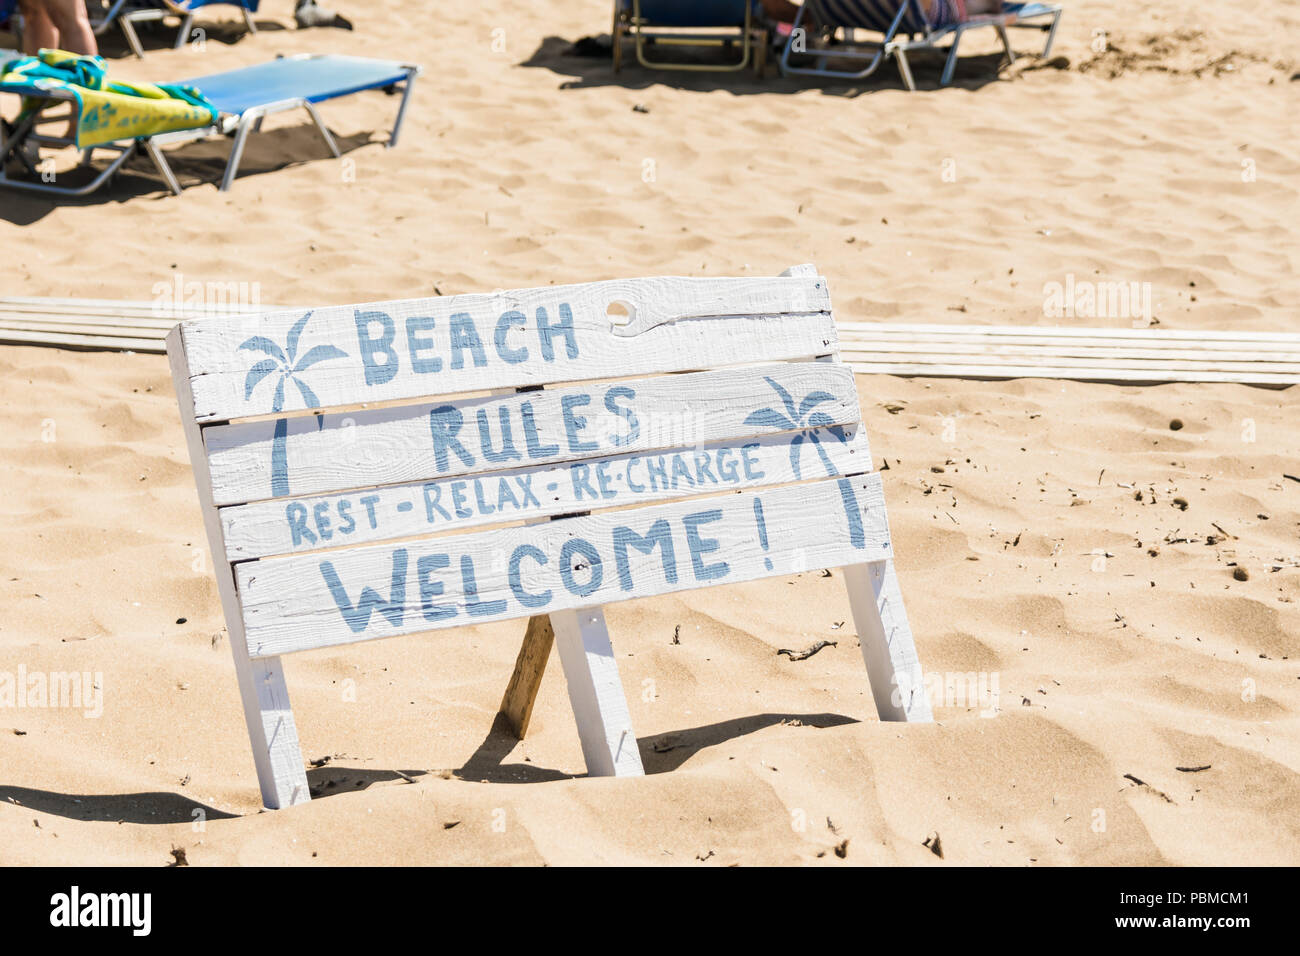 White cartello in legno sulla spiaggia, con segno: Spiaggia regole - il riposo, il relax, ricaricare e benvenuti alla spiaggia Foto Stock